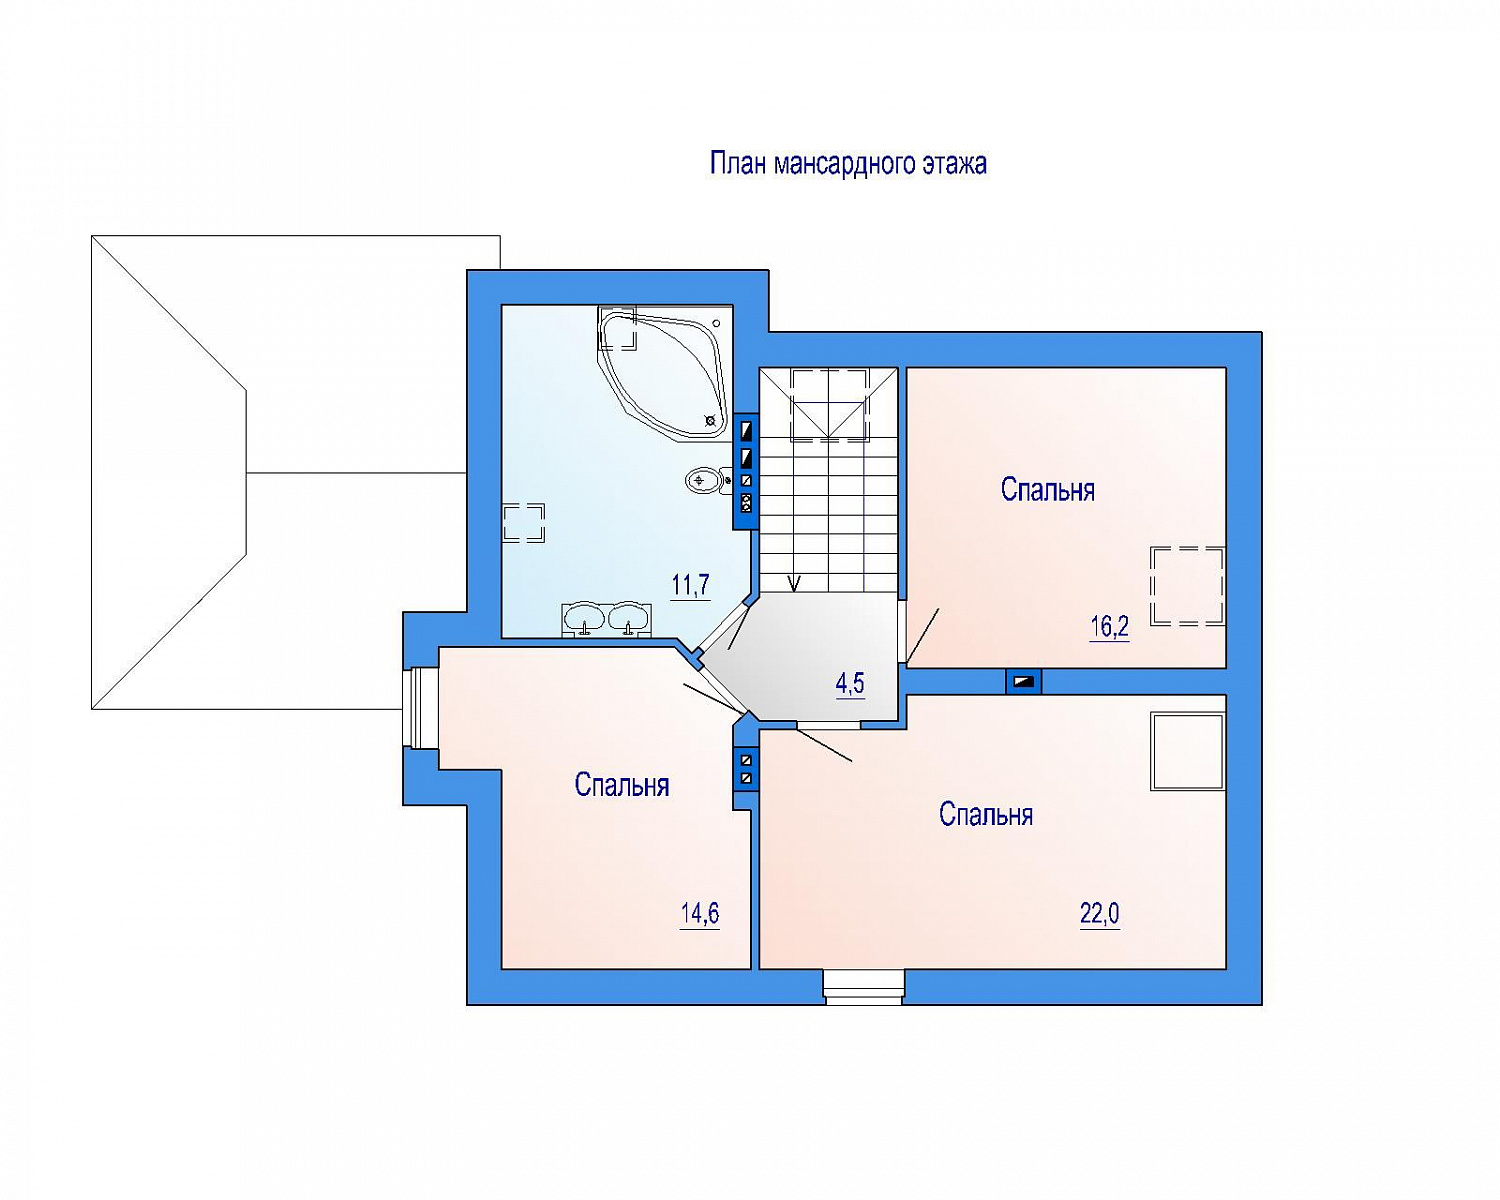 Двухэтажный кирпичный дом с мансардой, 158м2, проект 05-600